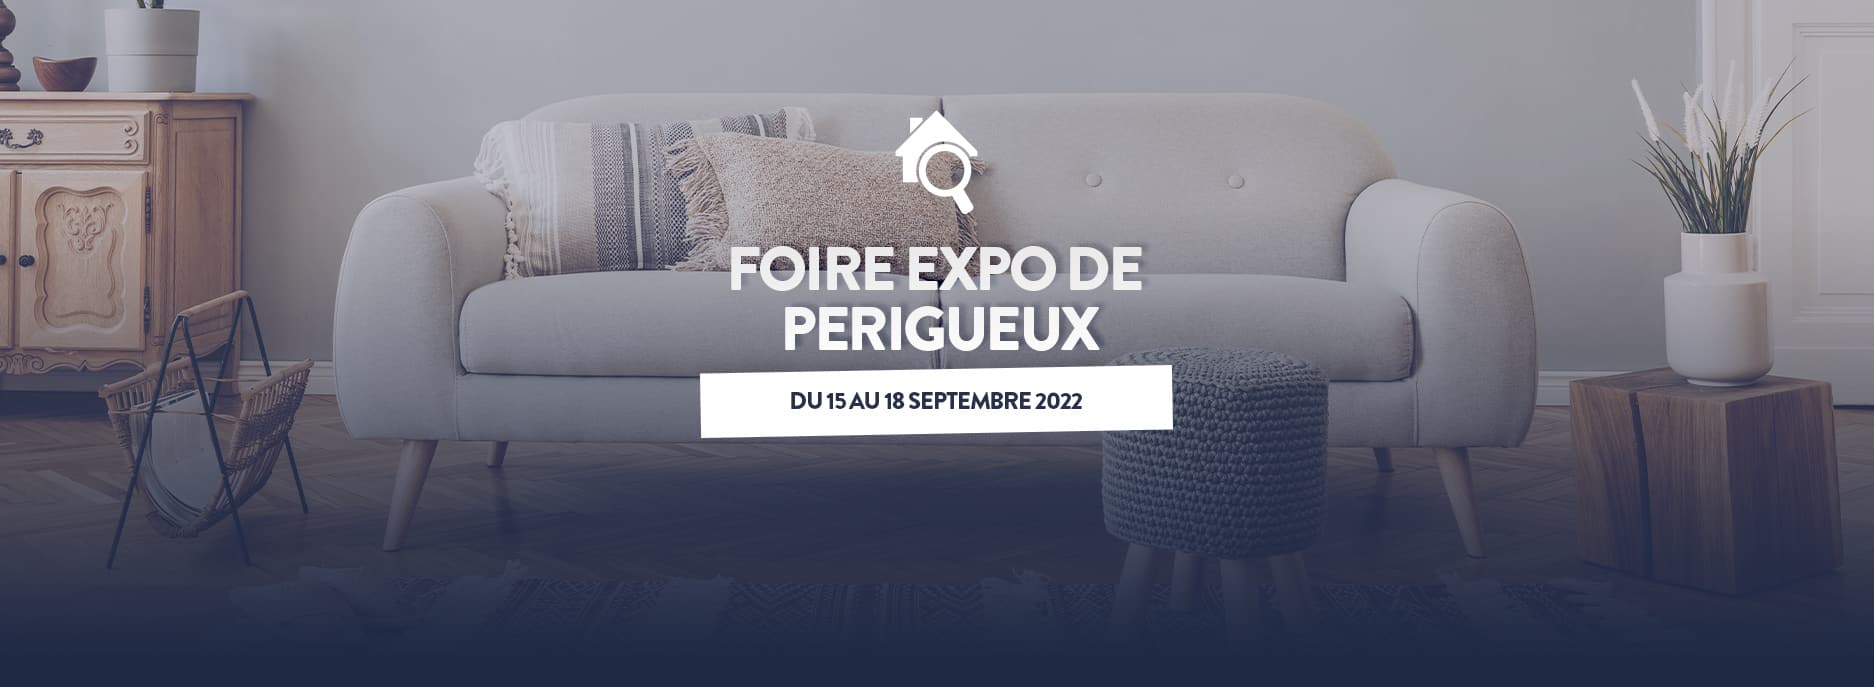 Foire Expo de Périgueux du 15 au 18 Septembre